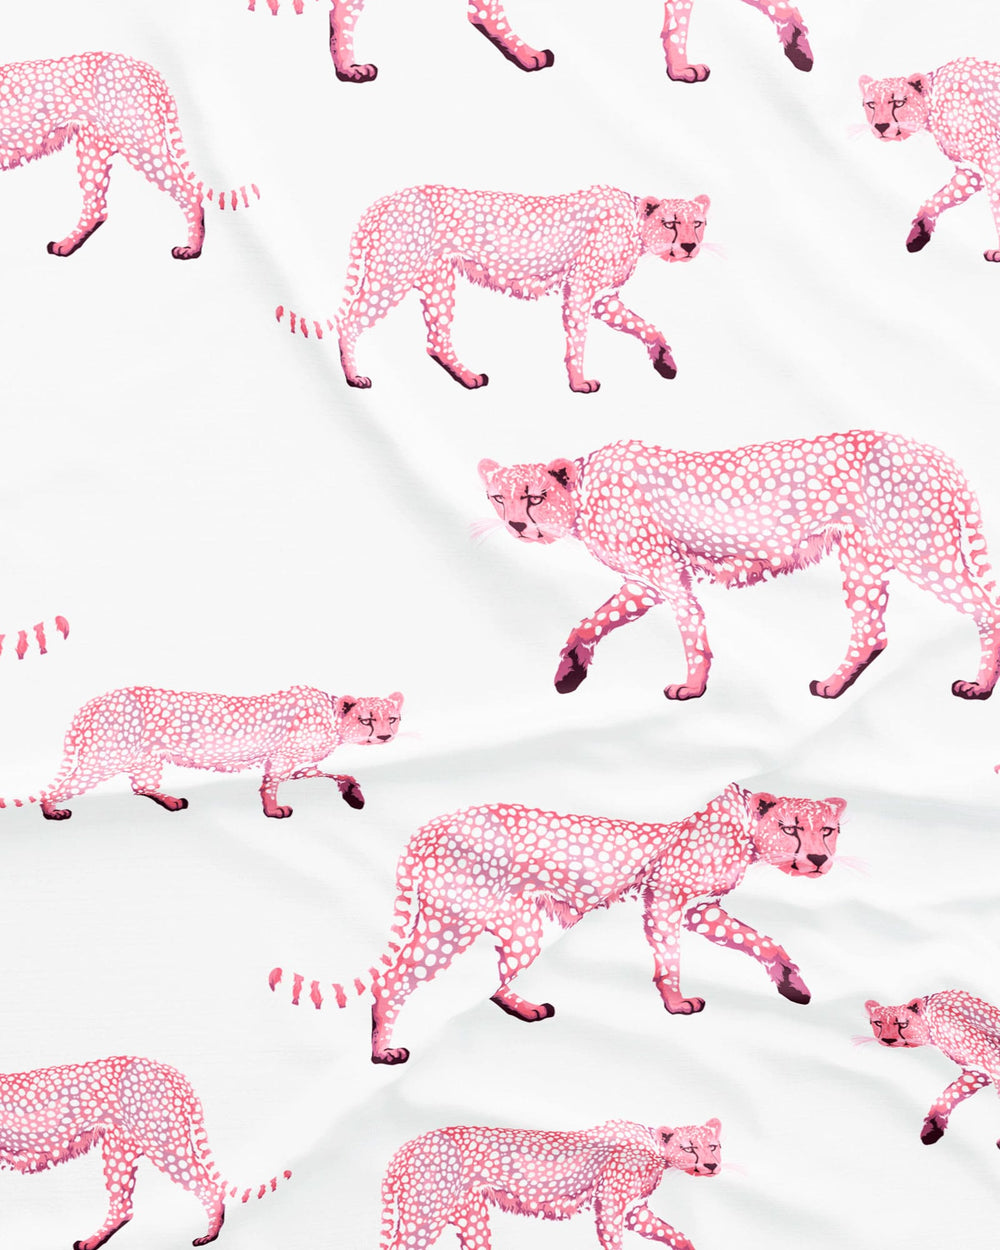 Women's sleepshirt - pink cheetah on white pattern